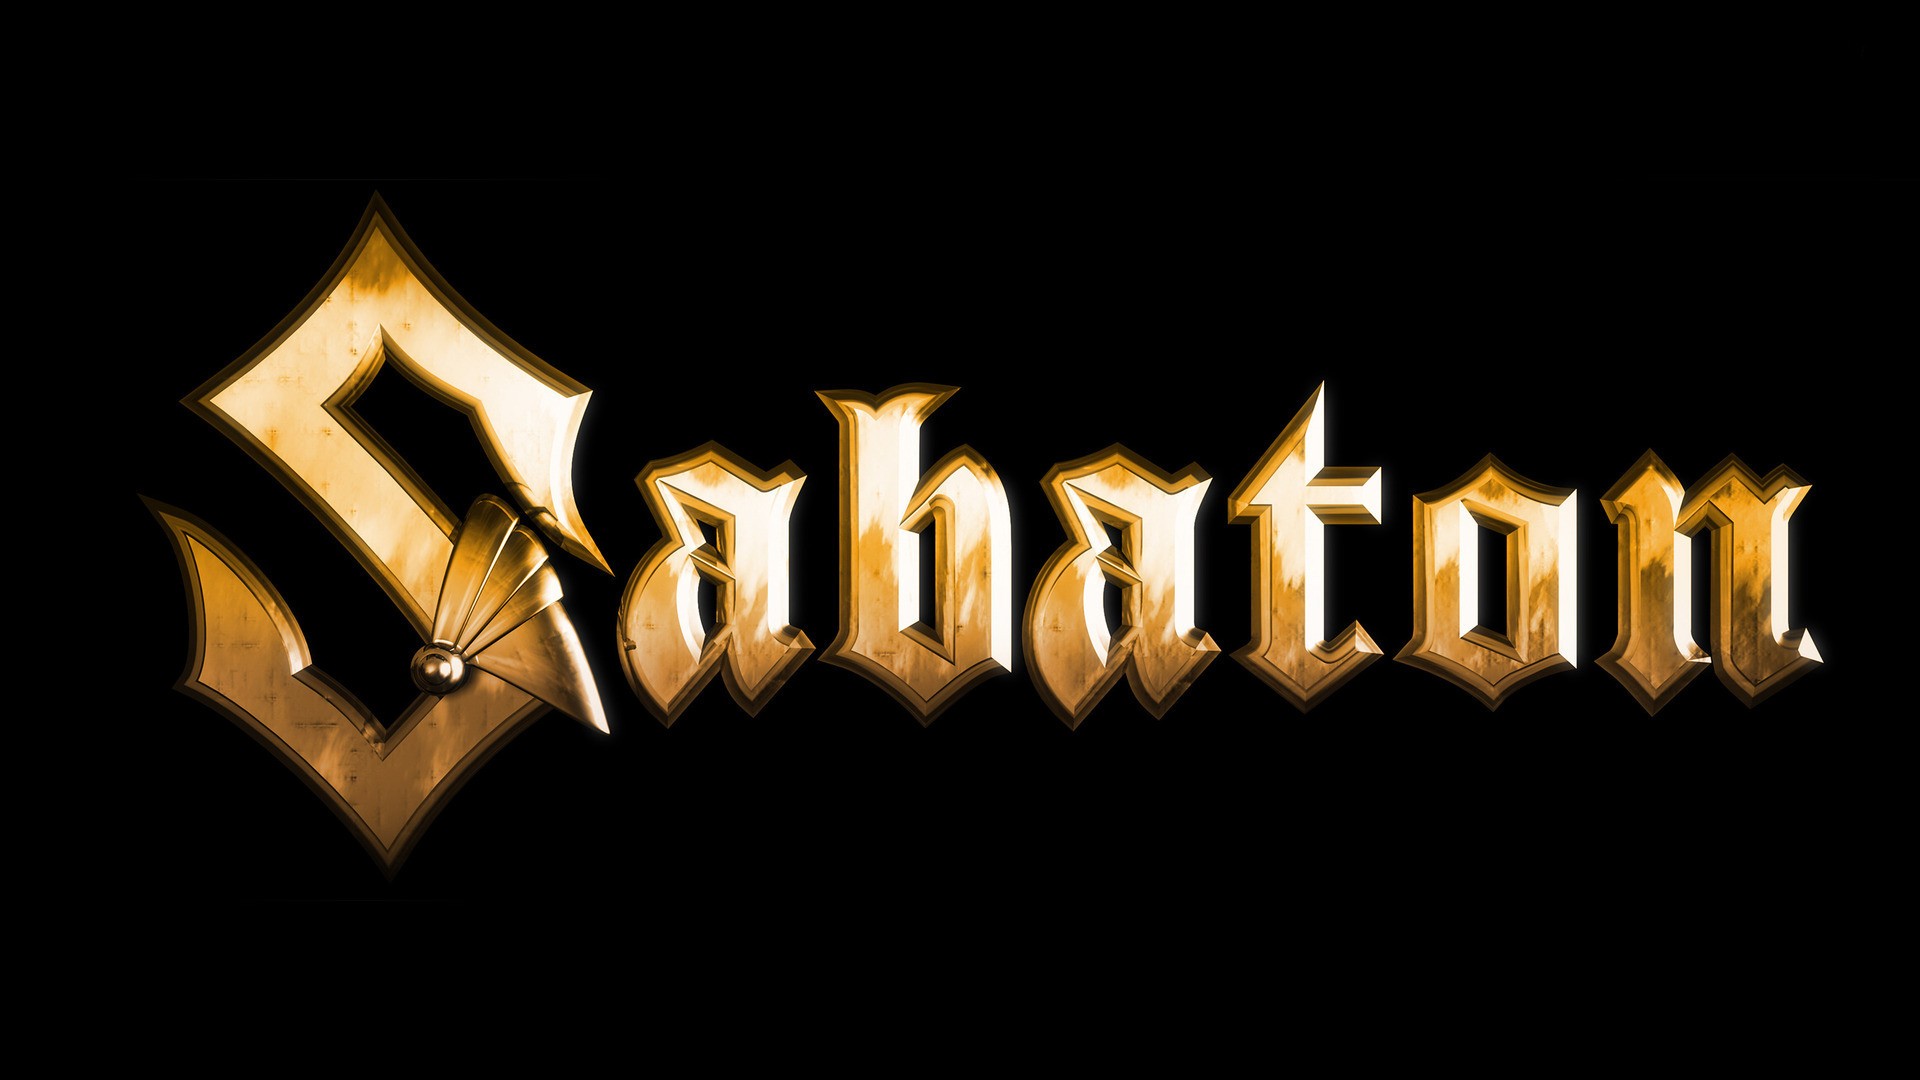 General 1920x1080 Sabaton typography simple background band logo power metal metal band Swedish music